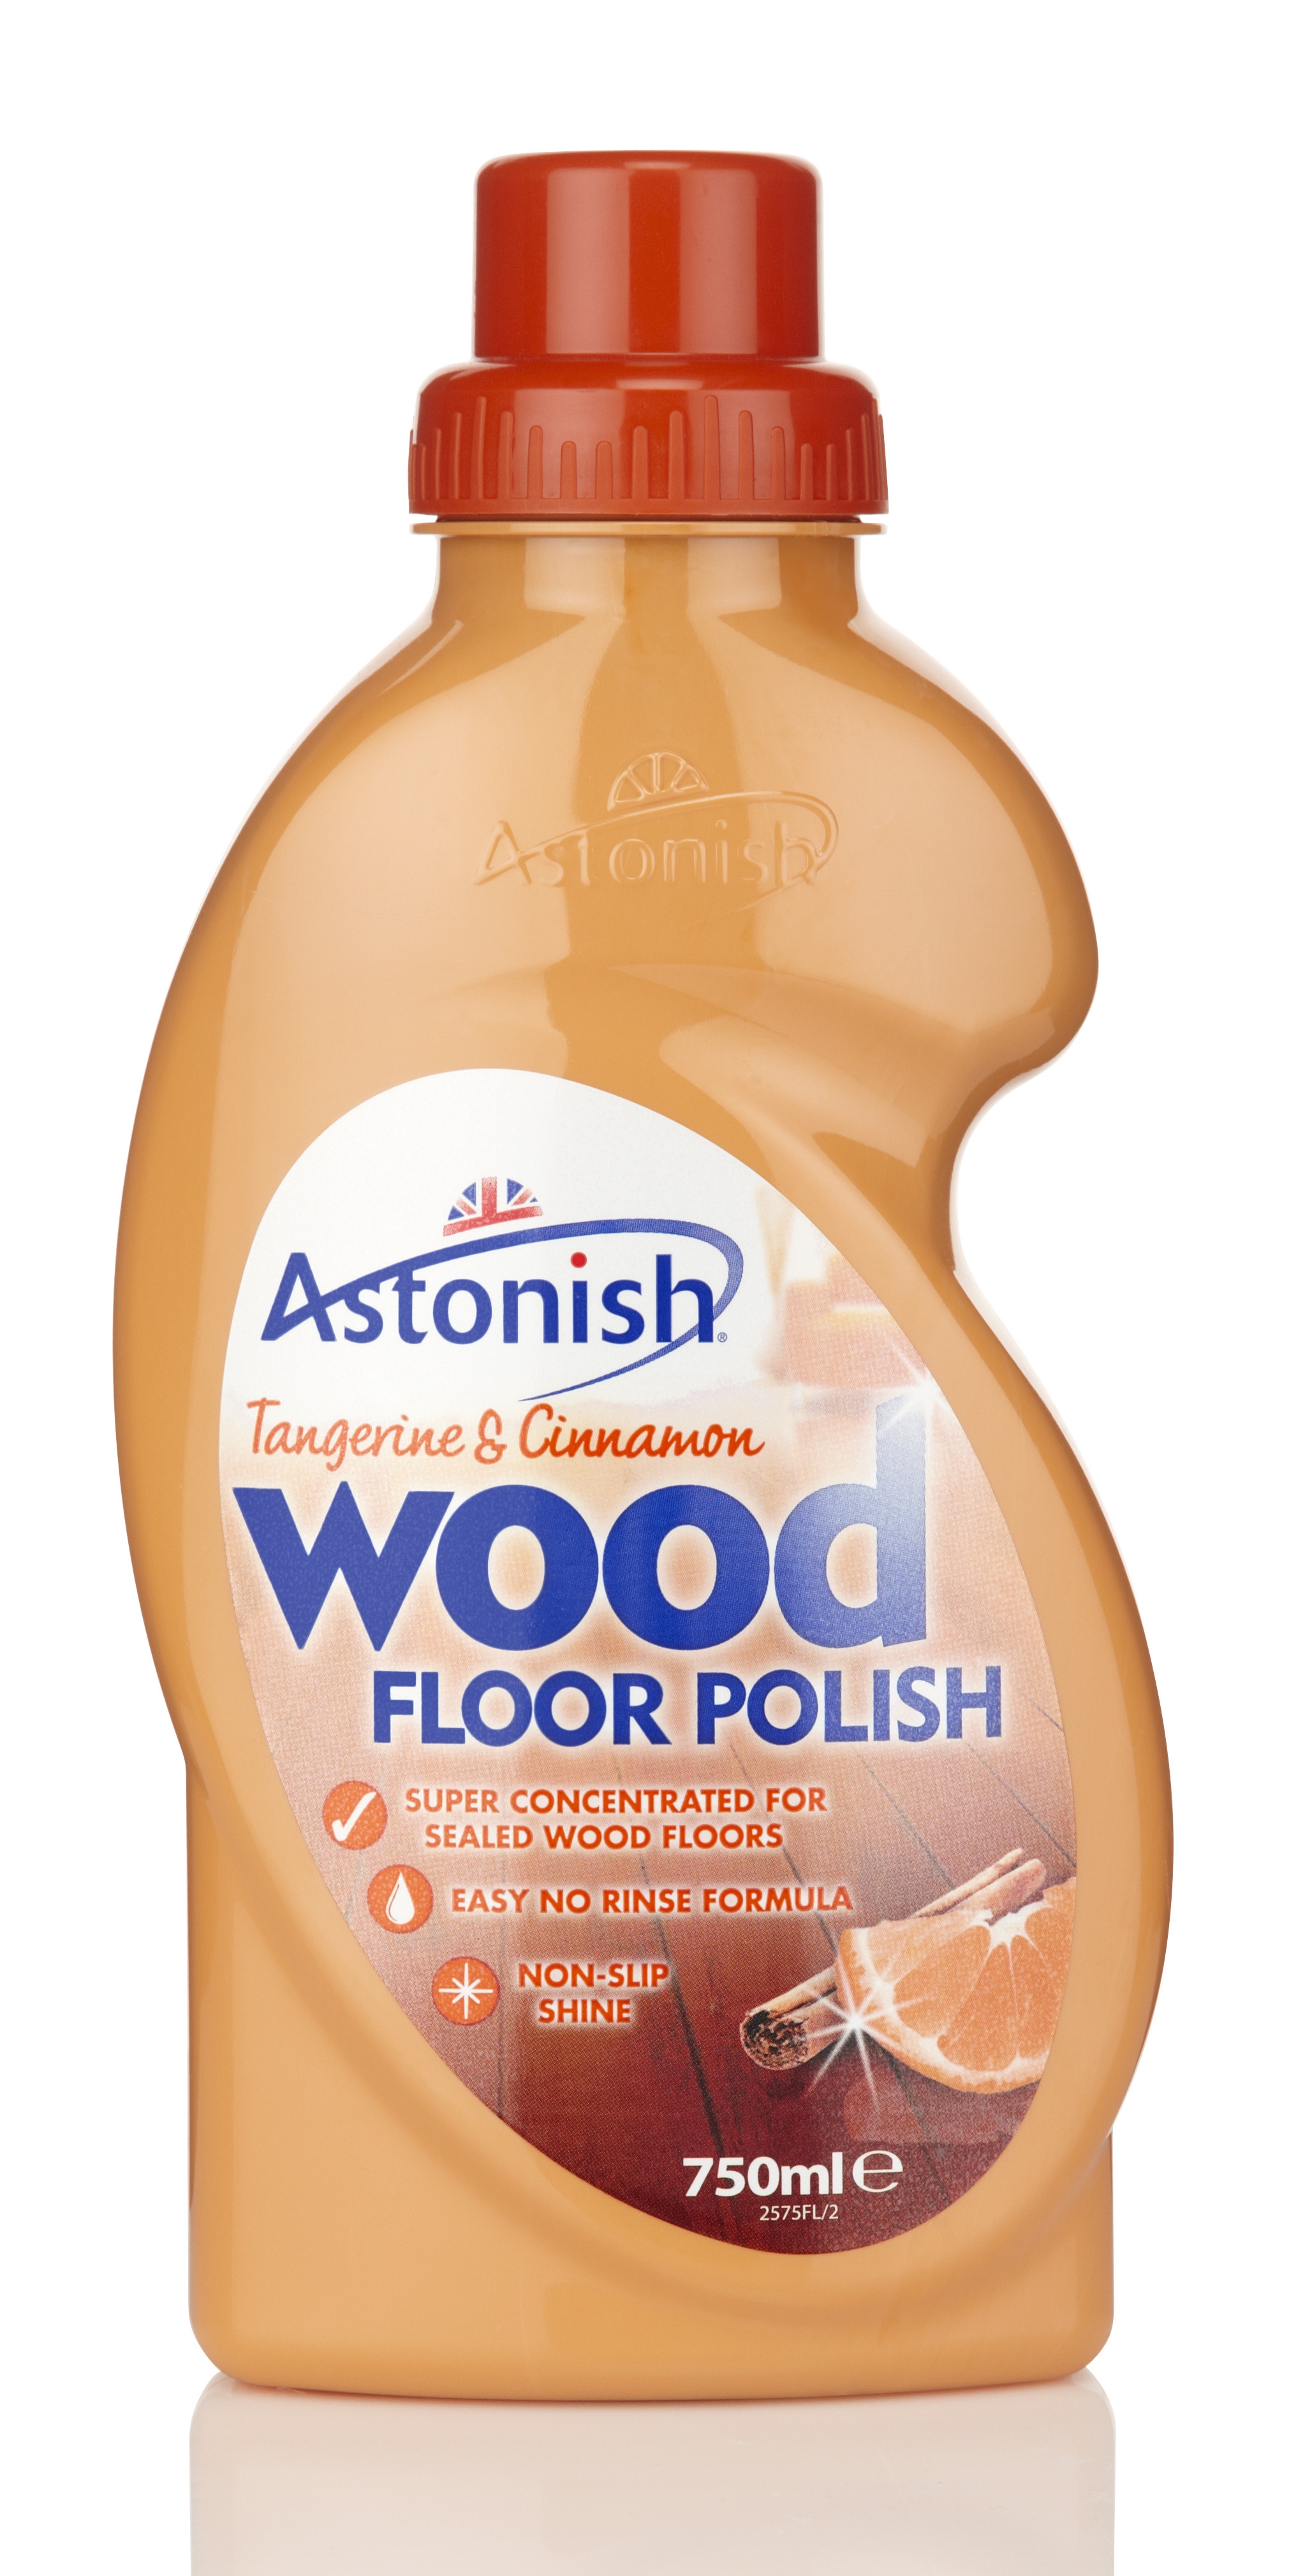 Astonish Wood Floor Polish Tangerine & Cinnamon 750ml.jpg